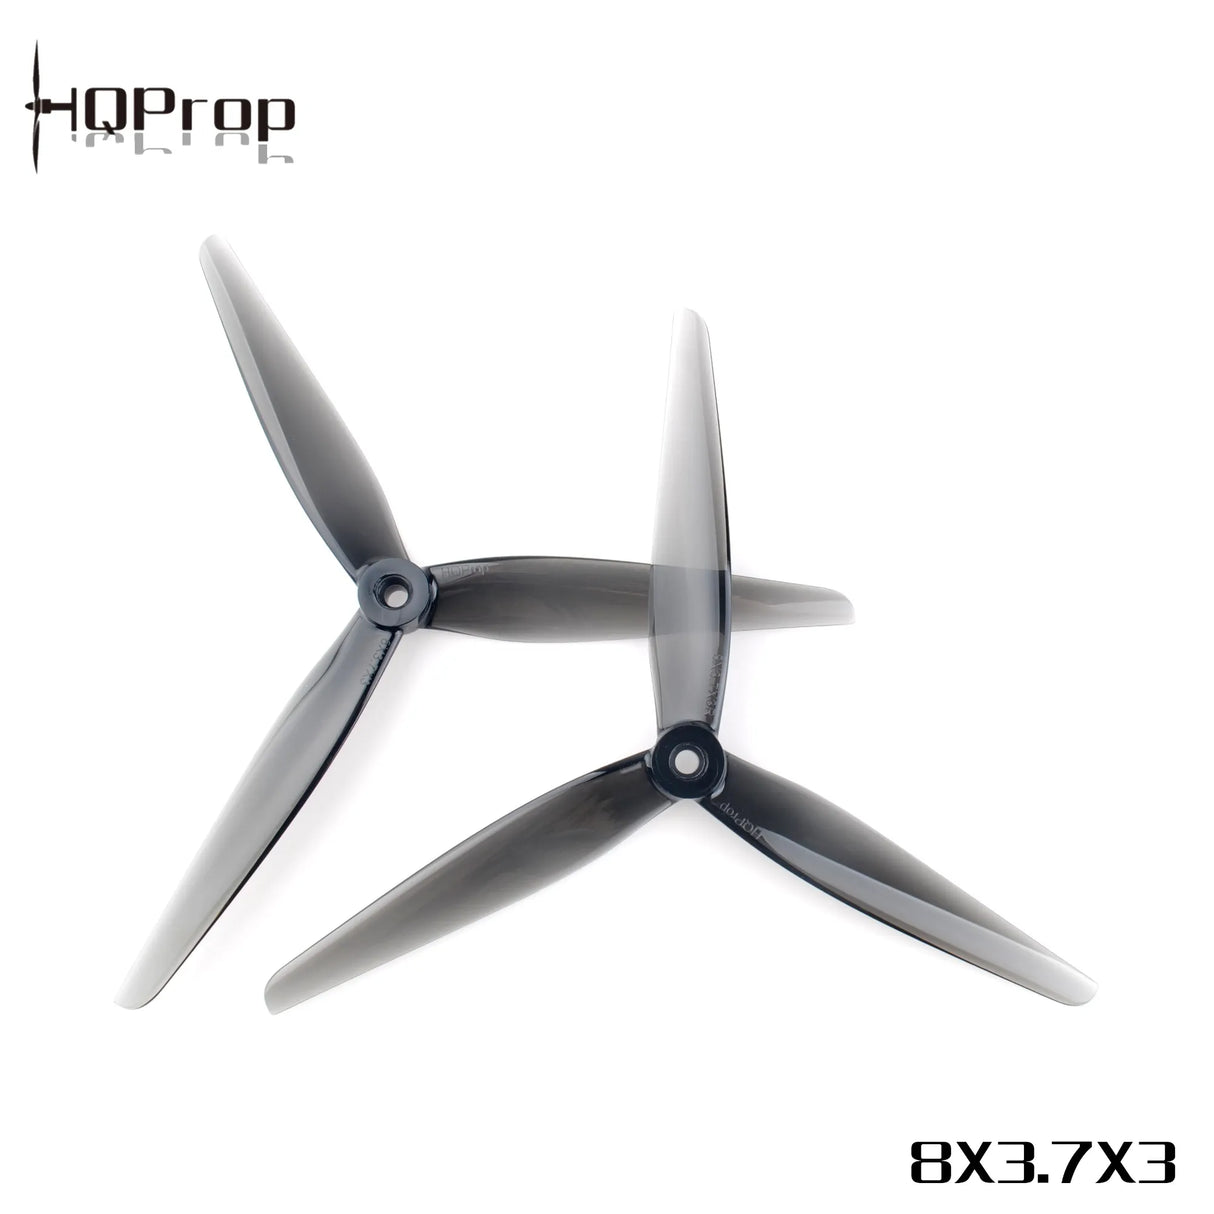 HQProp 8X3.7X3 Grey Propellers - DroneDynamics.ca